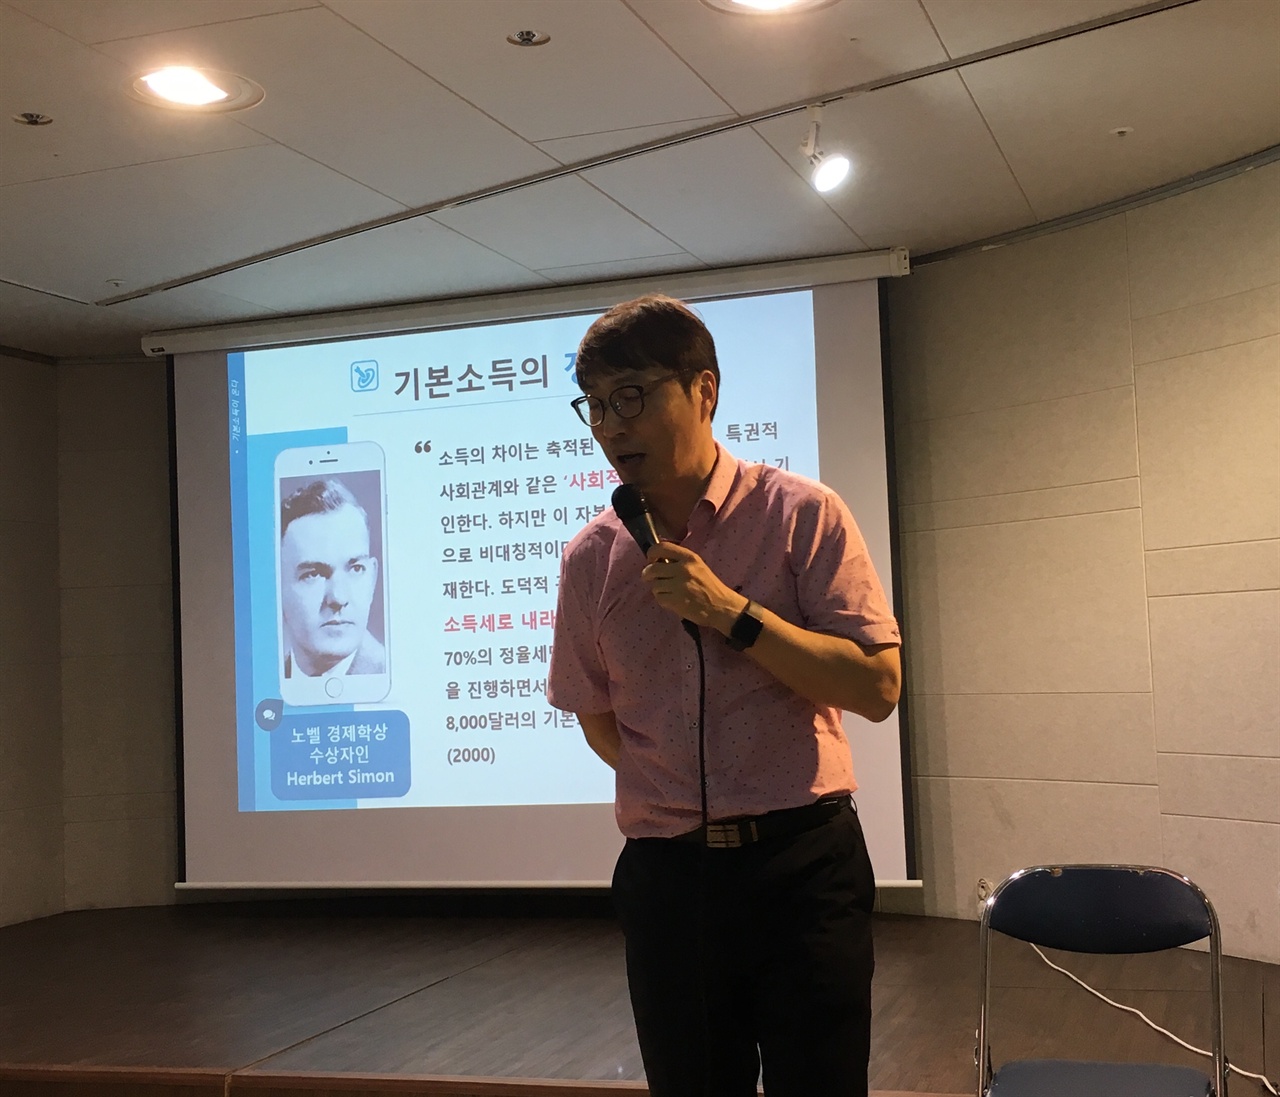 김찬휘 강사는 90분 강연 내내 유쾌한 입담으로 기본소득에 대해 쉽고, 재미있게 설명해서 참가자들의 뜨거운 호응을 끌어내었다.